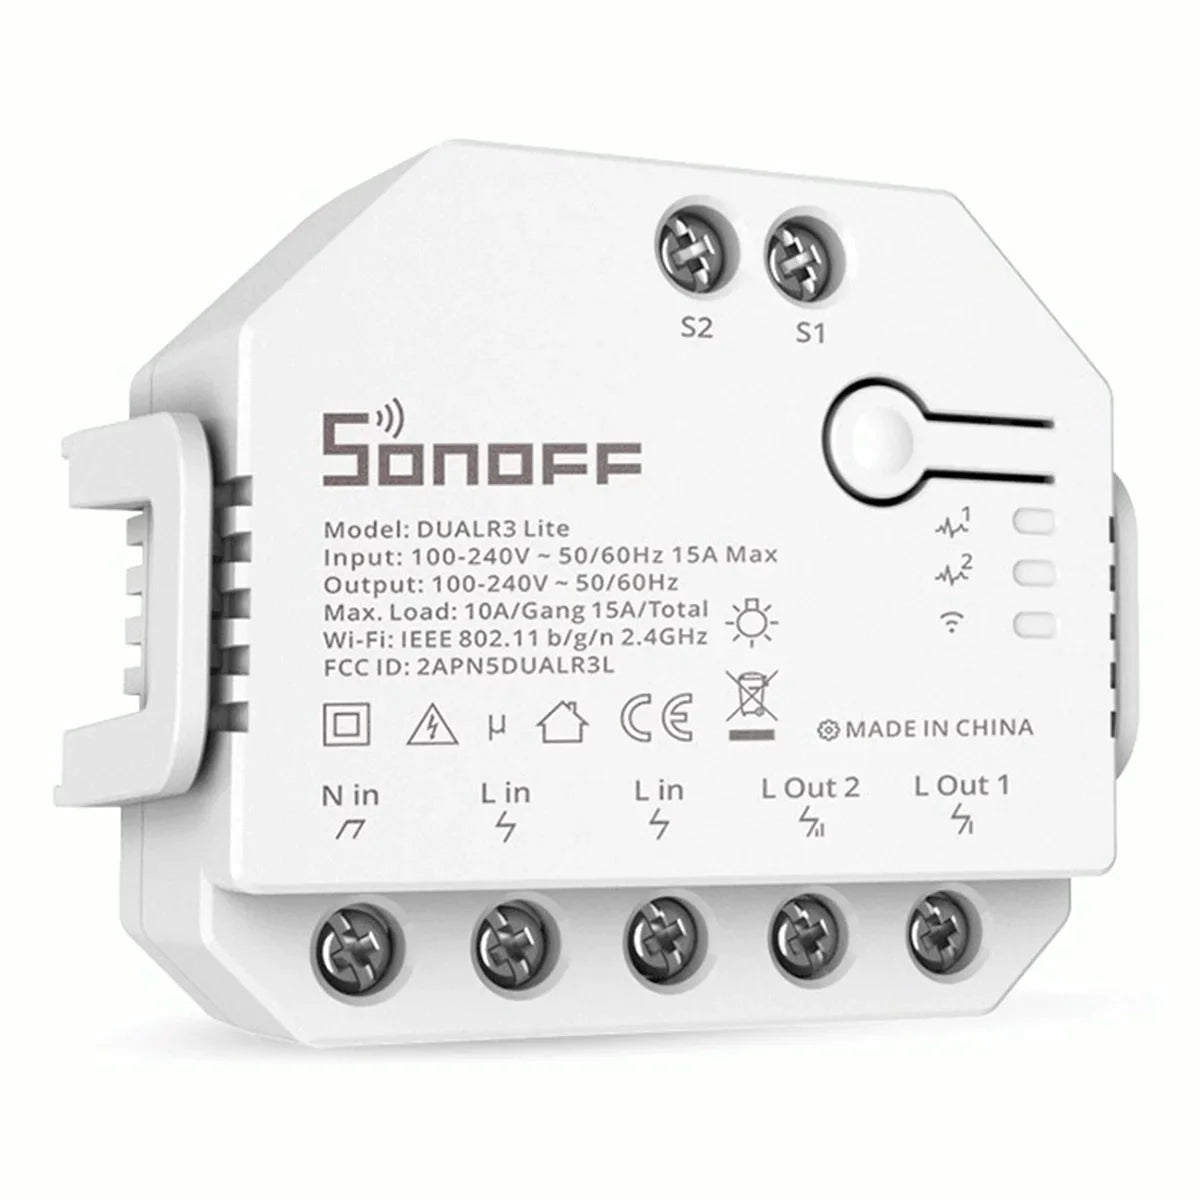 Conmutador Wifi Sonoff Dual R3 Lite